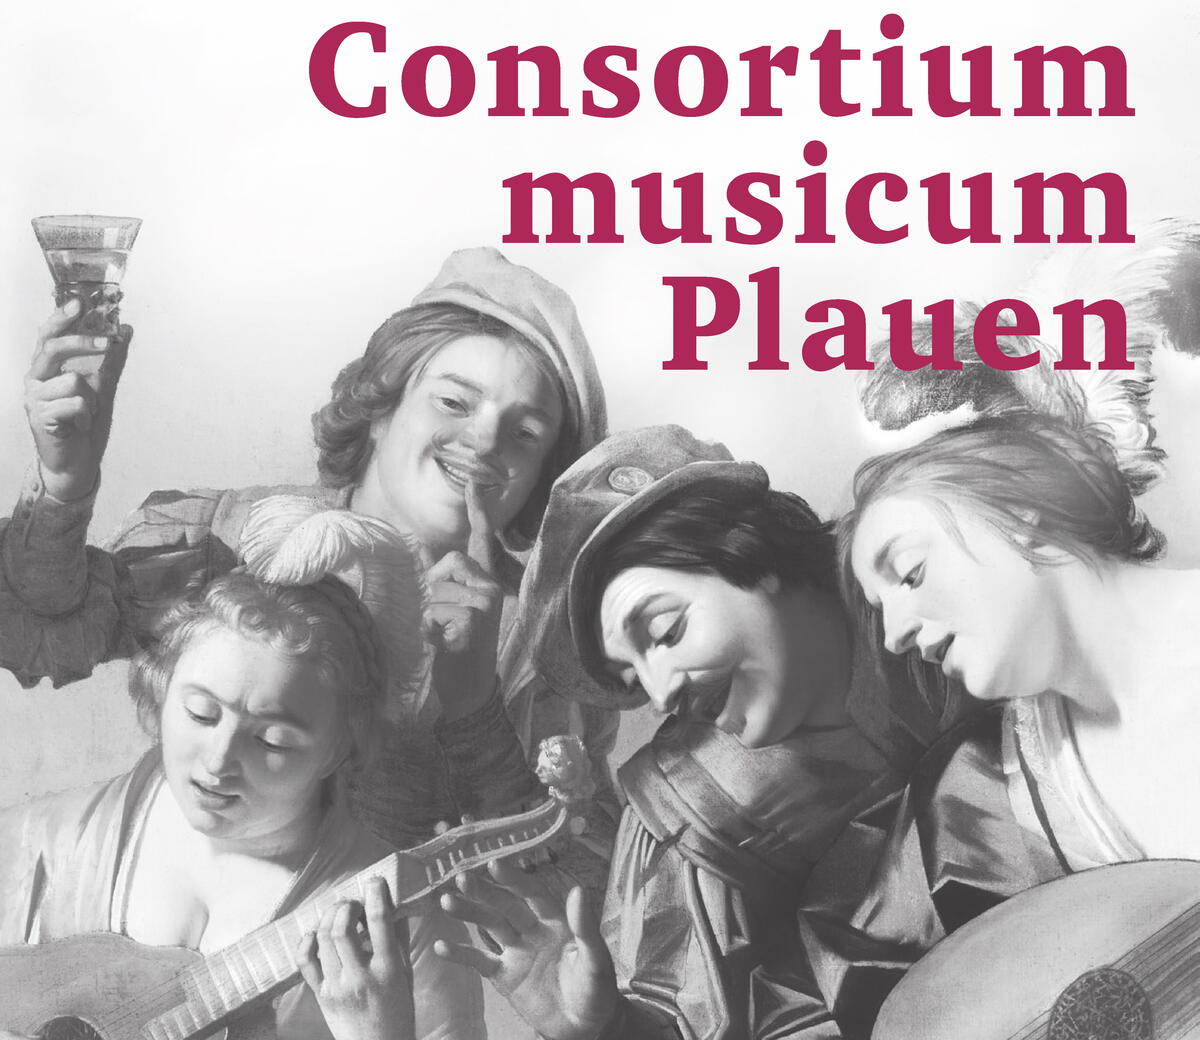 Bild vergrößern: Consortium Musicum Plauen